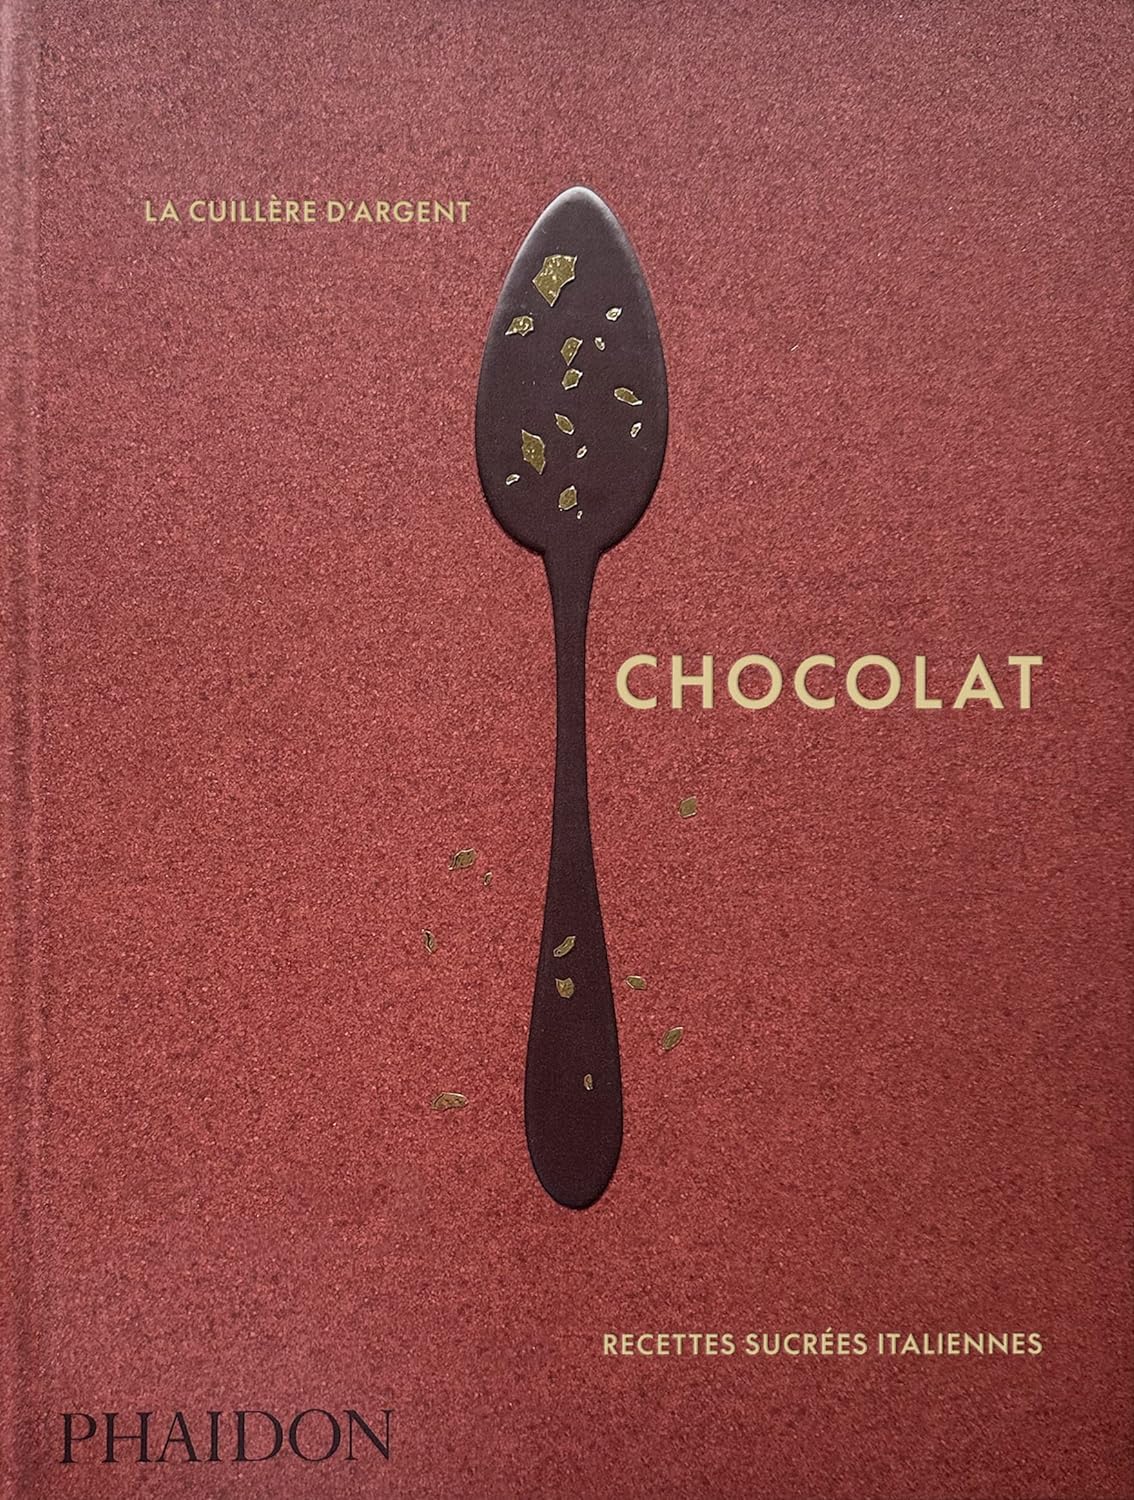 La cuillère d’argent : chocolat    - Phaïdon - Livre de cuisine - 